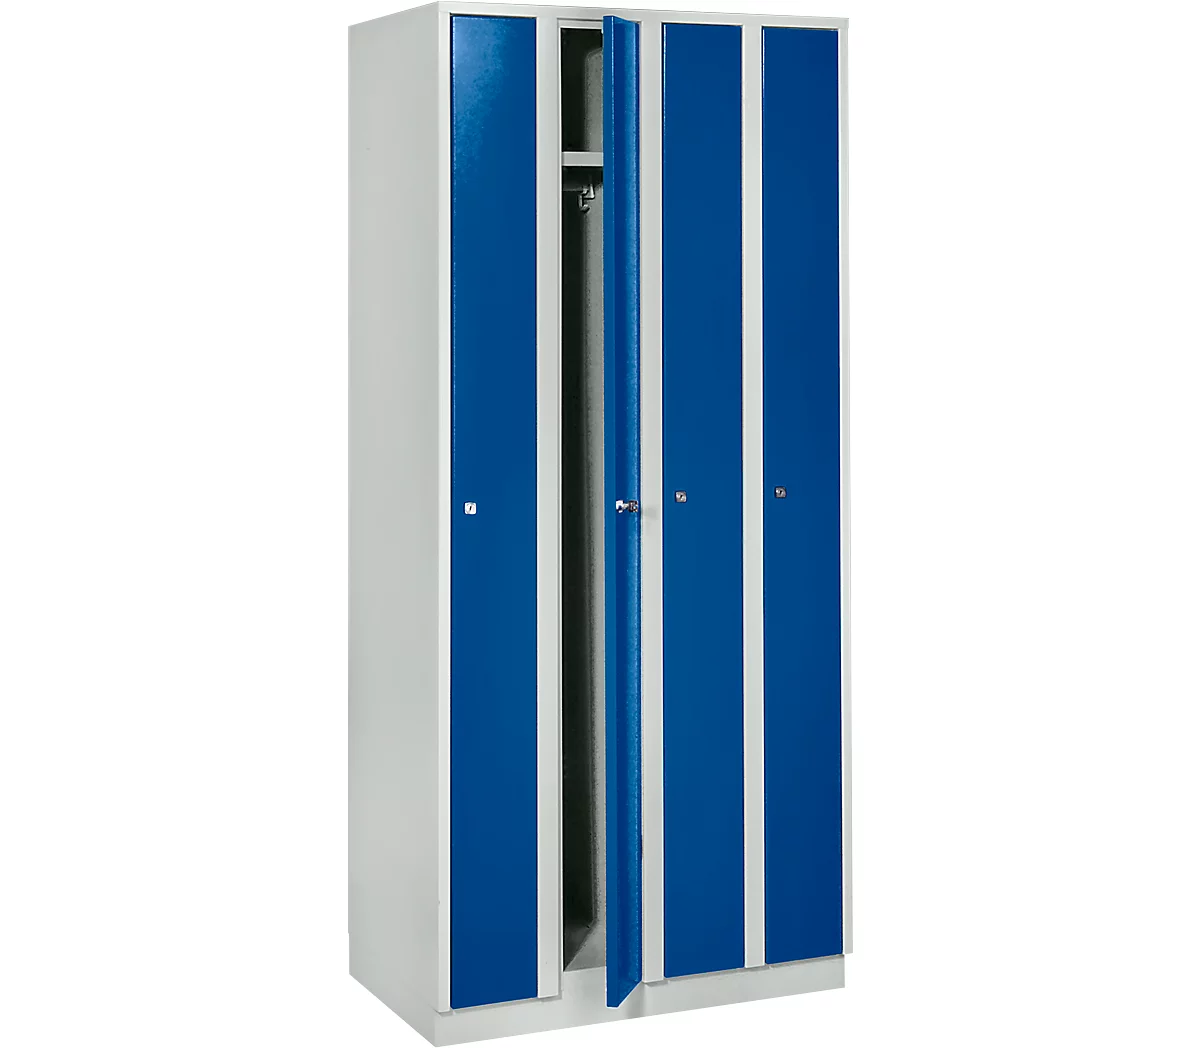 Taquilla que ahorra espacio, anchura del compartimento 200 mm, con cerradura, 4 compartimentos, azul genciana